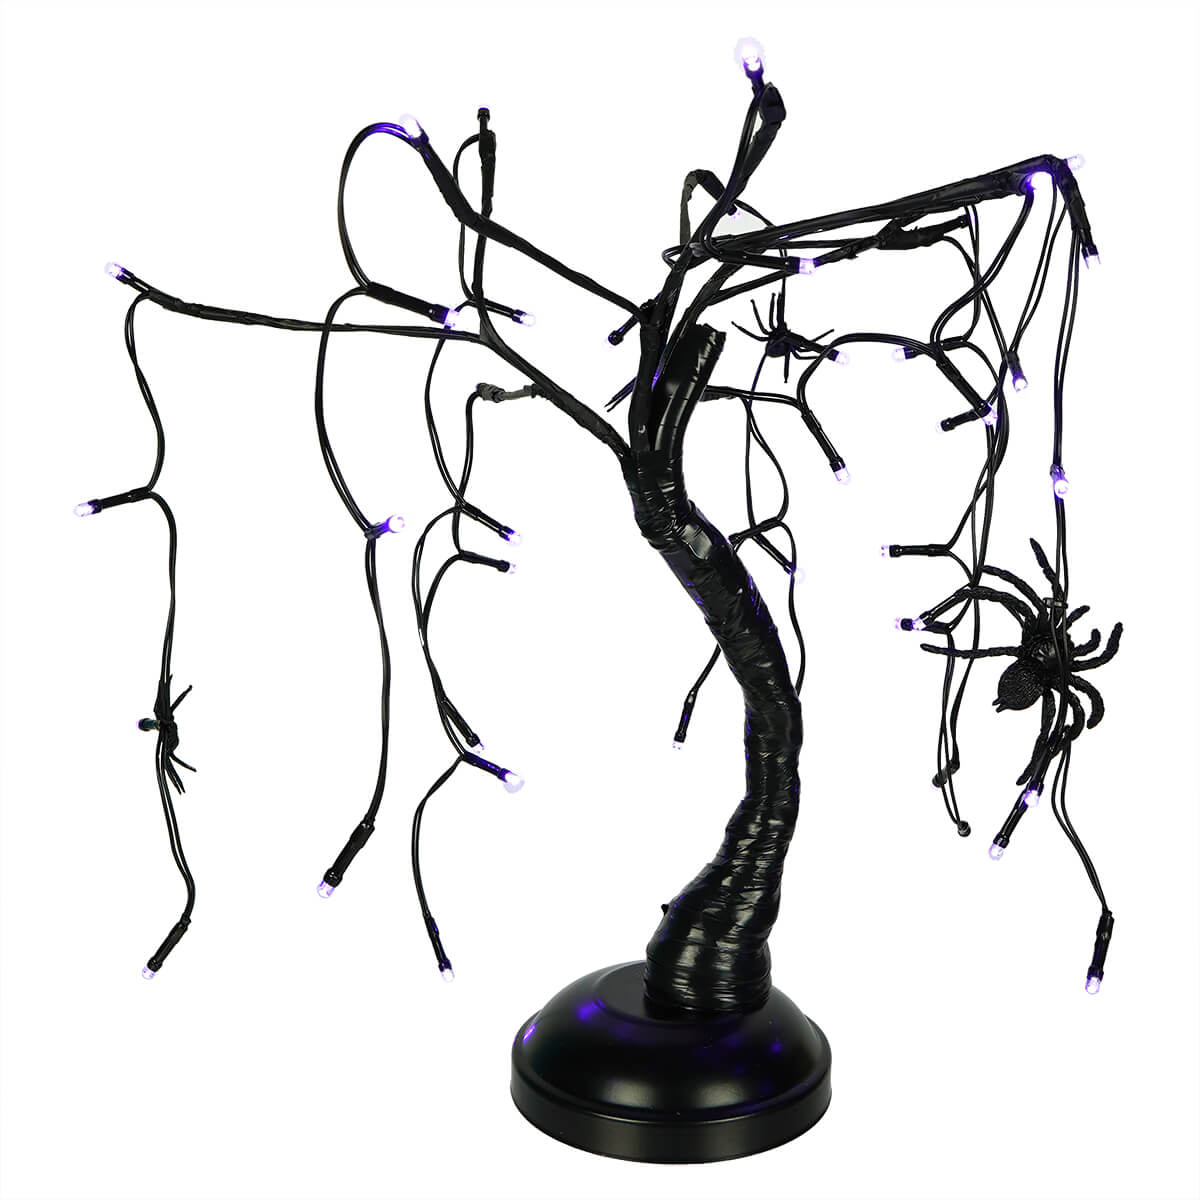 Black Spider Tree With 48 Purple LED Lights